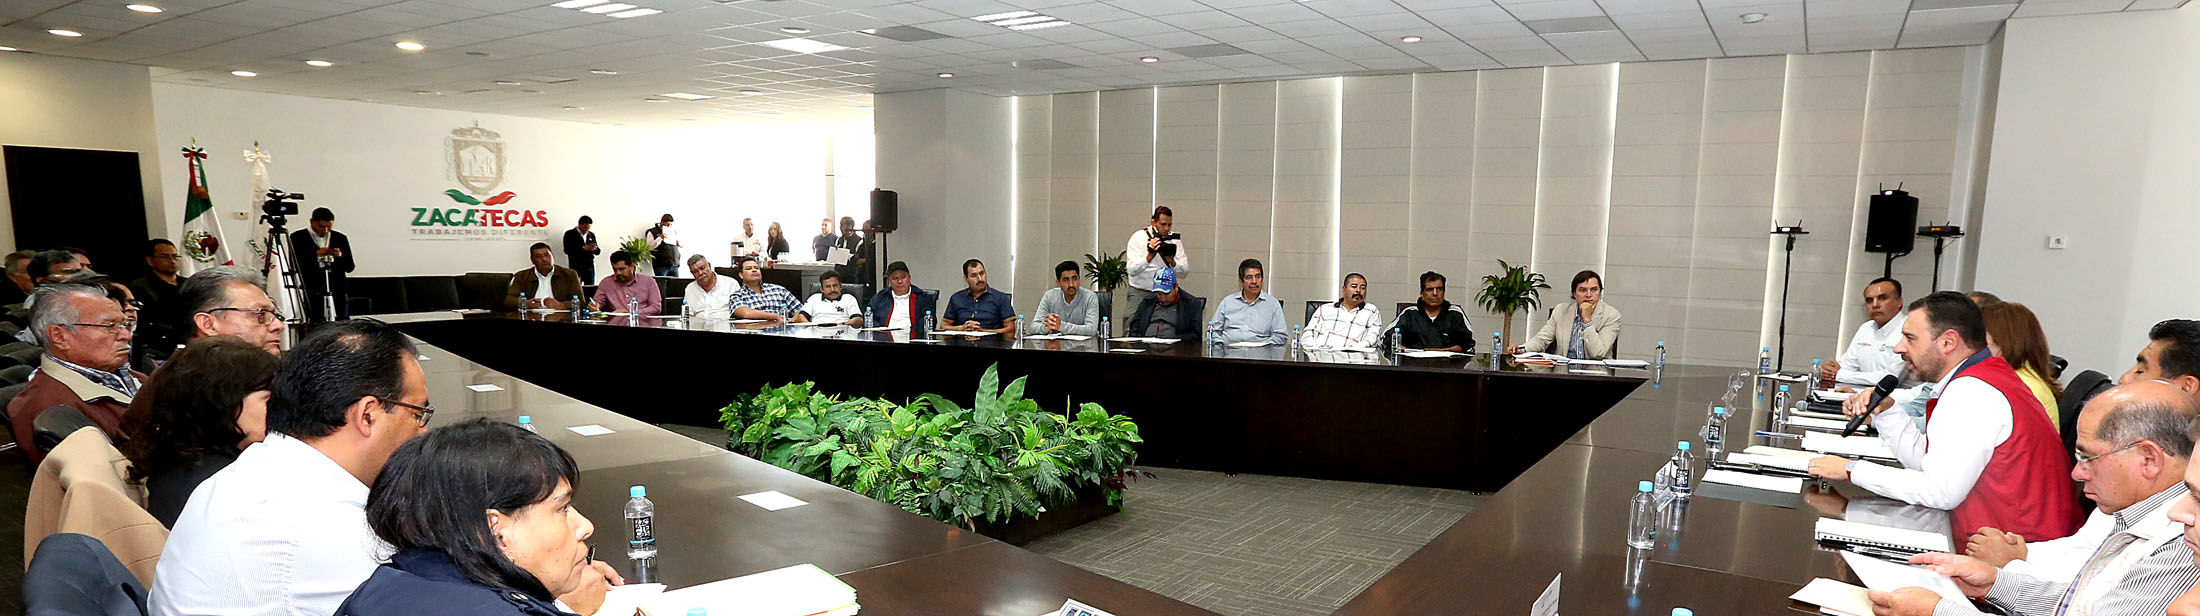 El gobernador Alejandro Tello presidió reunión con transportistas y concesionarios n foto: la jornada zacatecas